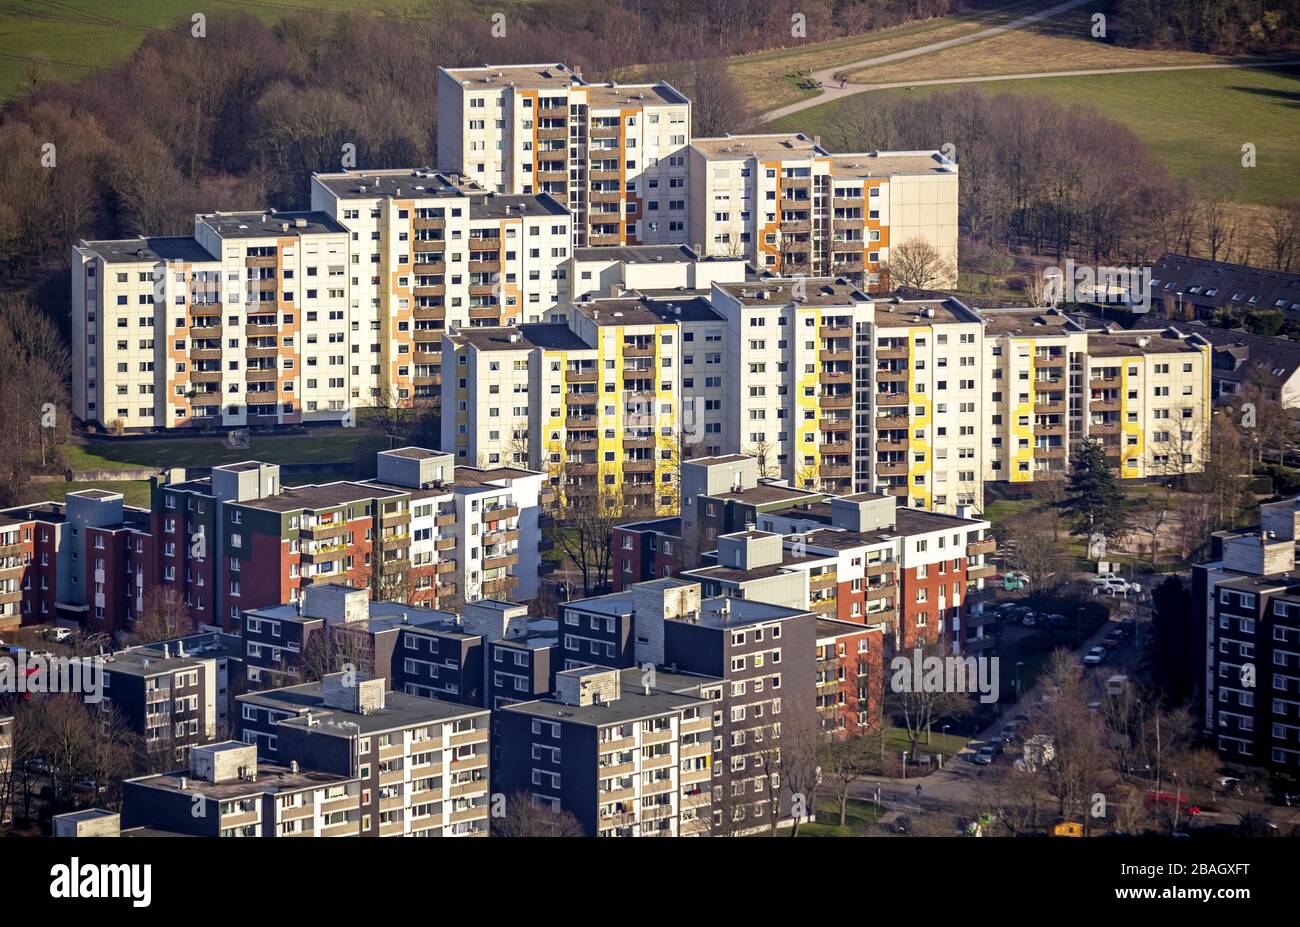 , Zona residencial de gran altura en el distrito de Horst entre Bonhoefferweg y Dahlauser Strasse, 28.02.2015, vista aérea, Alemania, Renania del Norte-Westfalia, Ruhr Area, Essen Foto de stock